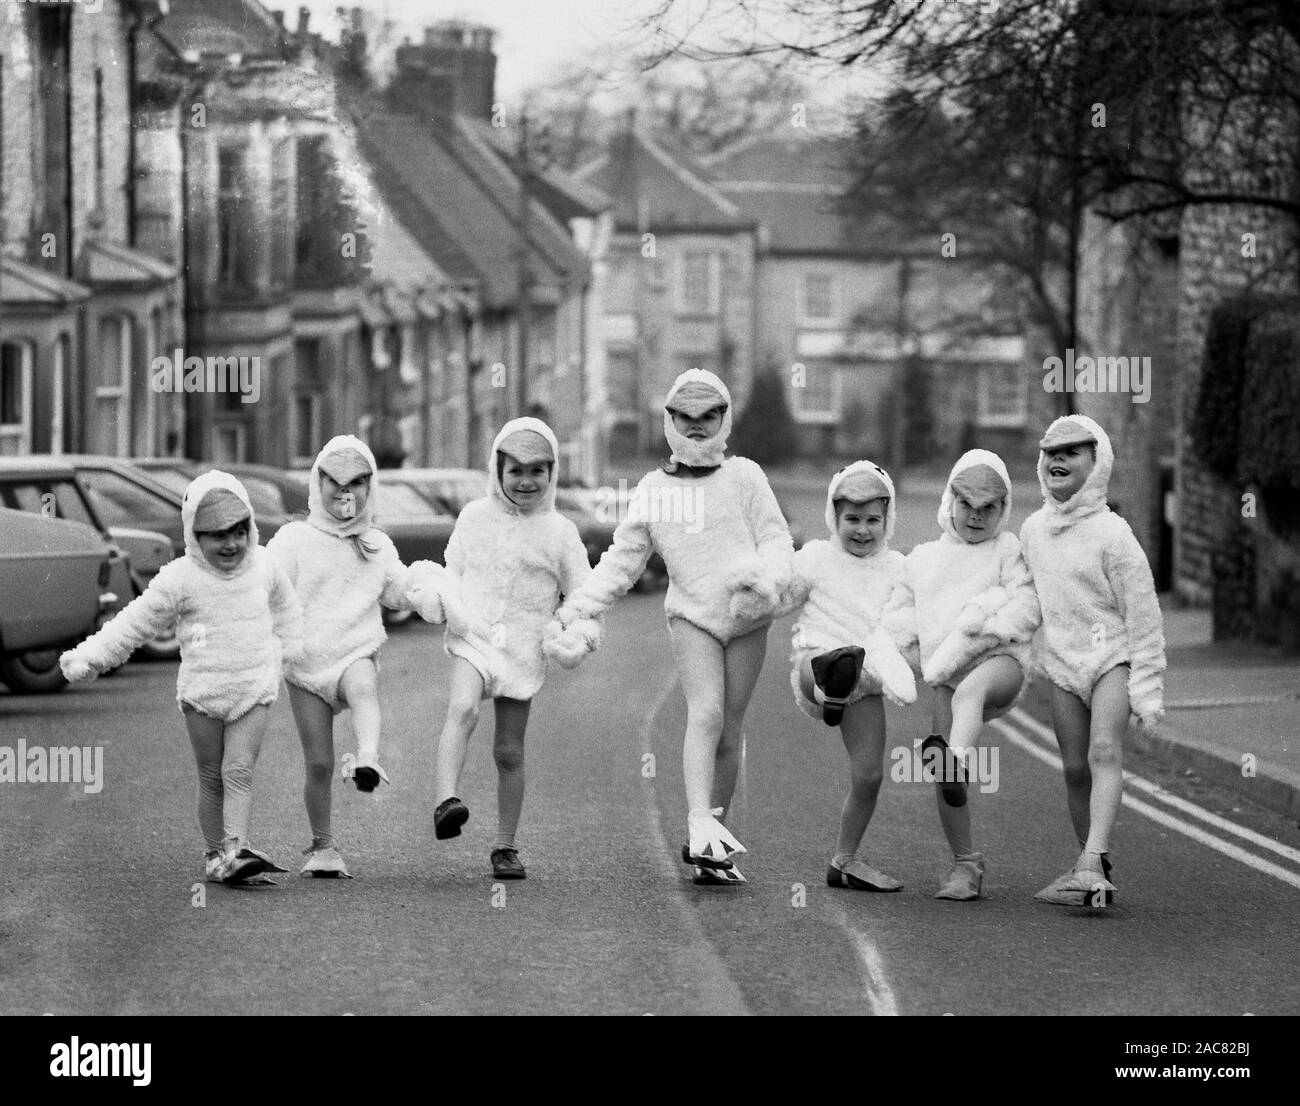 Années 1980, historiques, 'Duck derby", les jeunes enfants dans une rue urbaine tenant la main et portant des costumes de canard, composé d'un costume de canard, canard en forme de tête du capot et surchaussures, England, UK. Banque D'Images